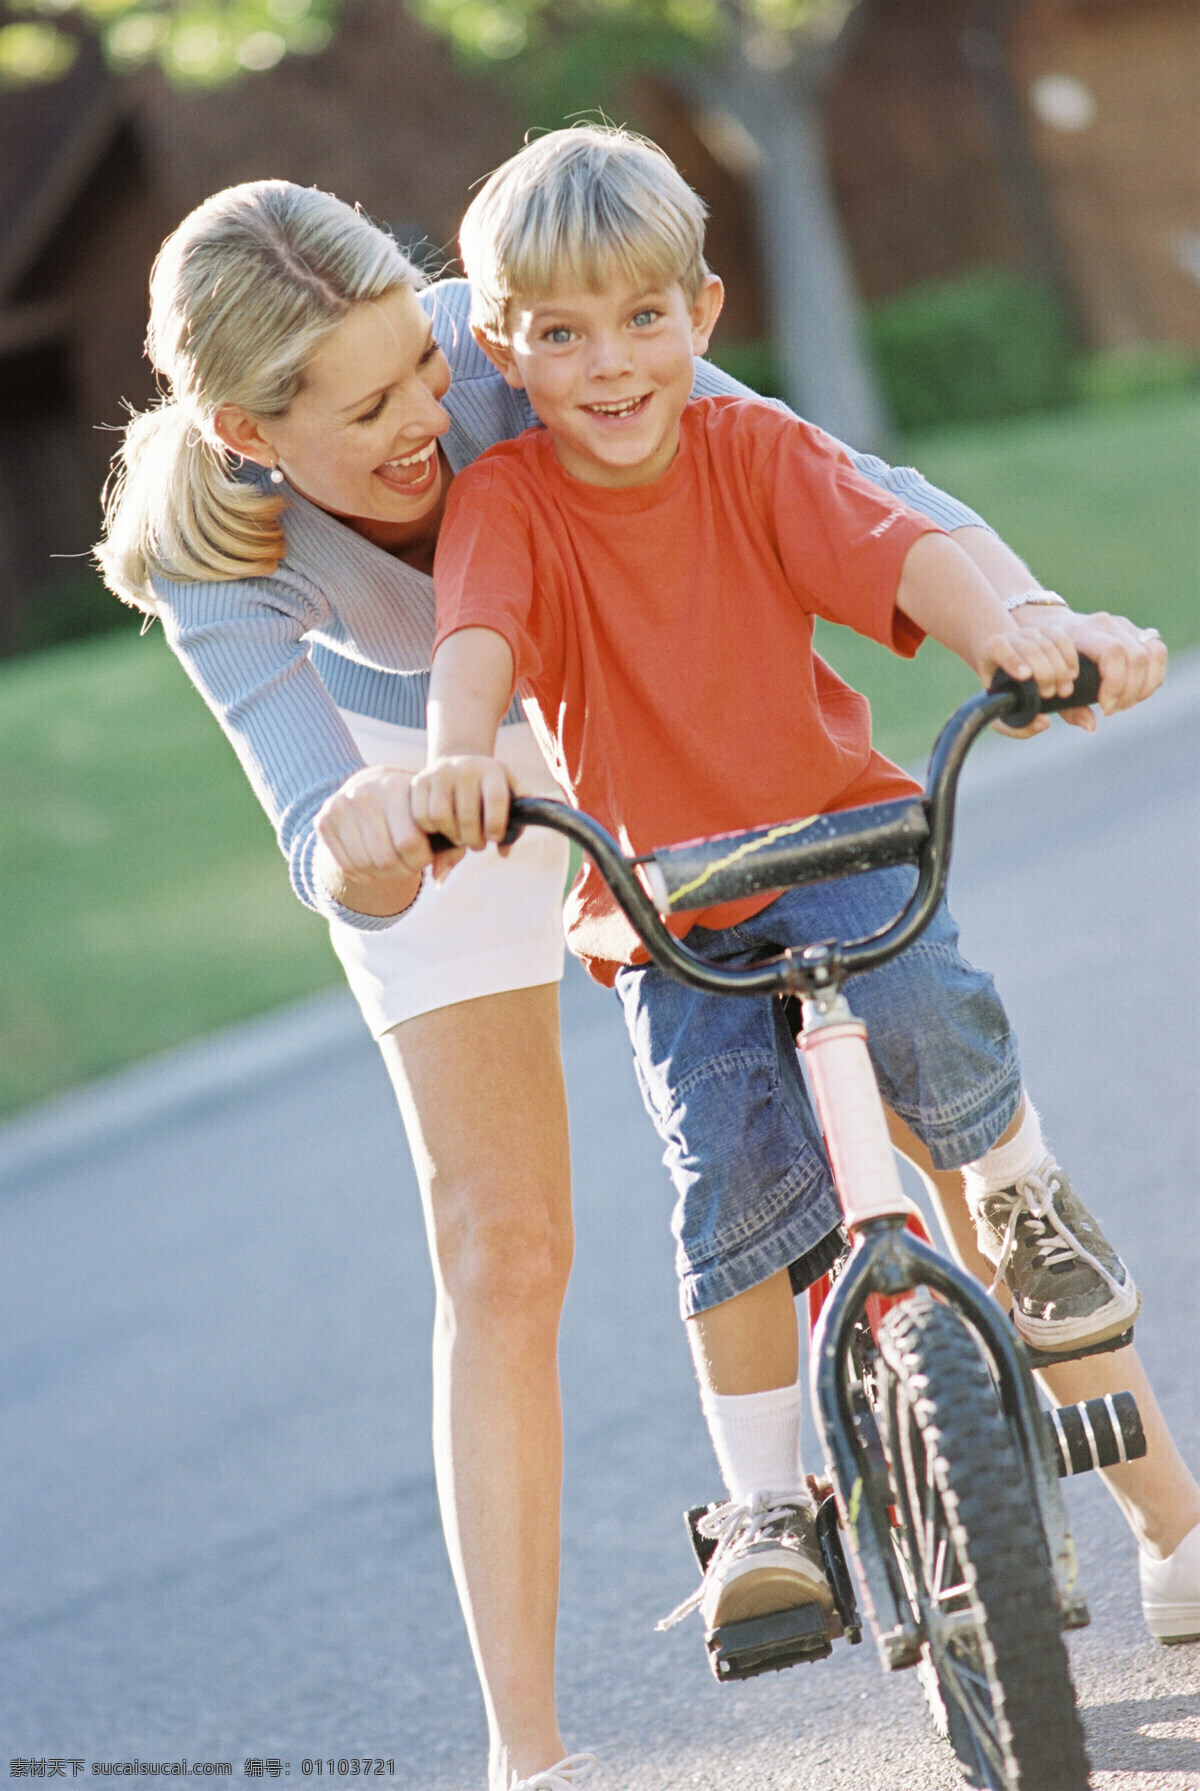 教 儿子 骑 自行车 母亲 外国家庭 小男孩 儿童 母子 女人 幸福 家庭 玩耍 快乐 开心 学 生活人物 人物图片